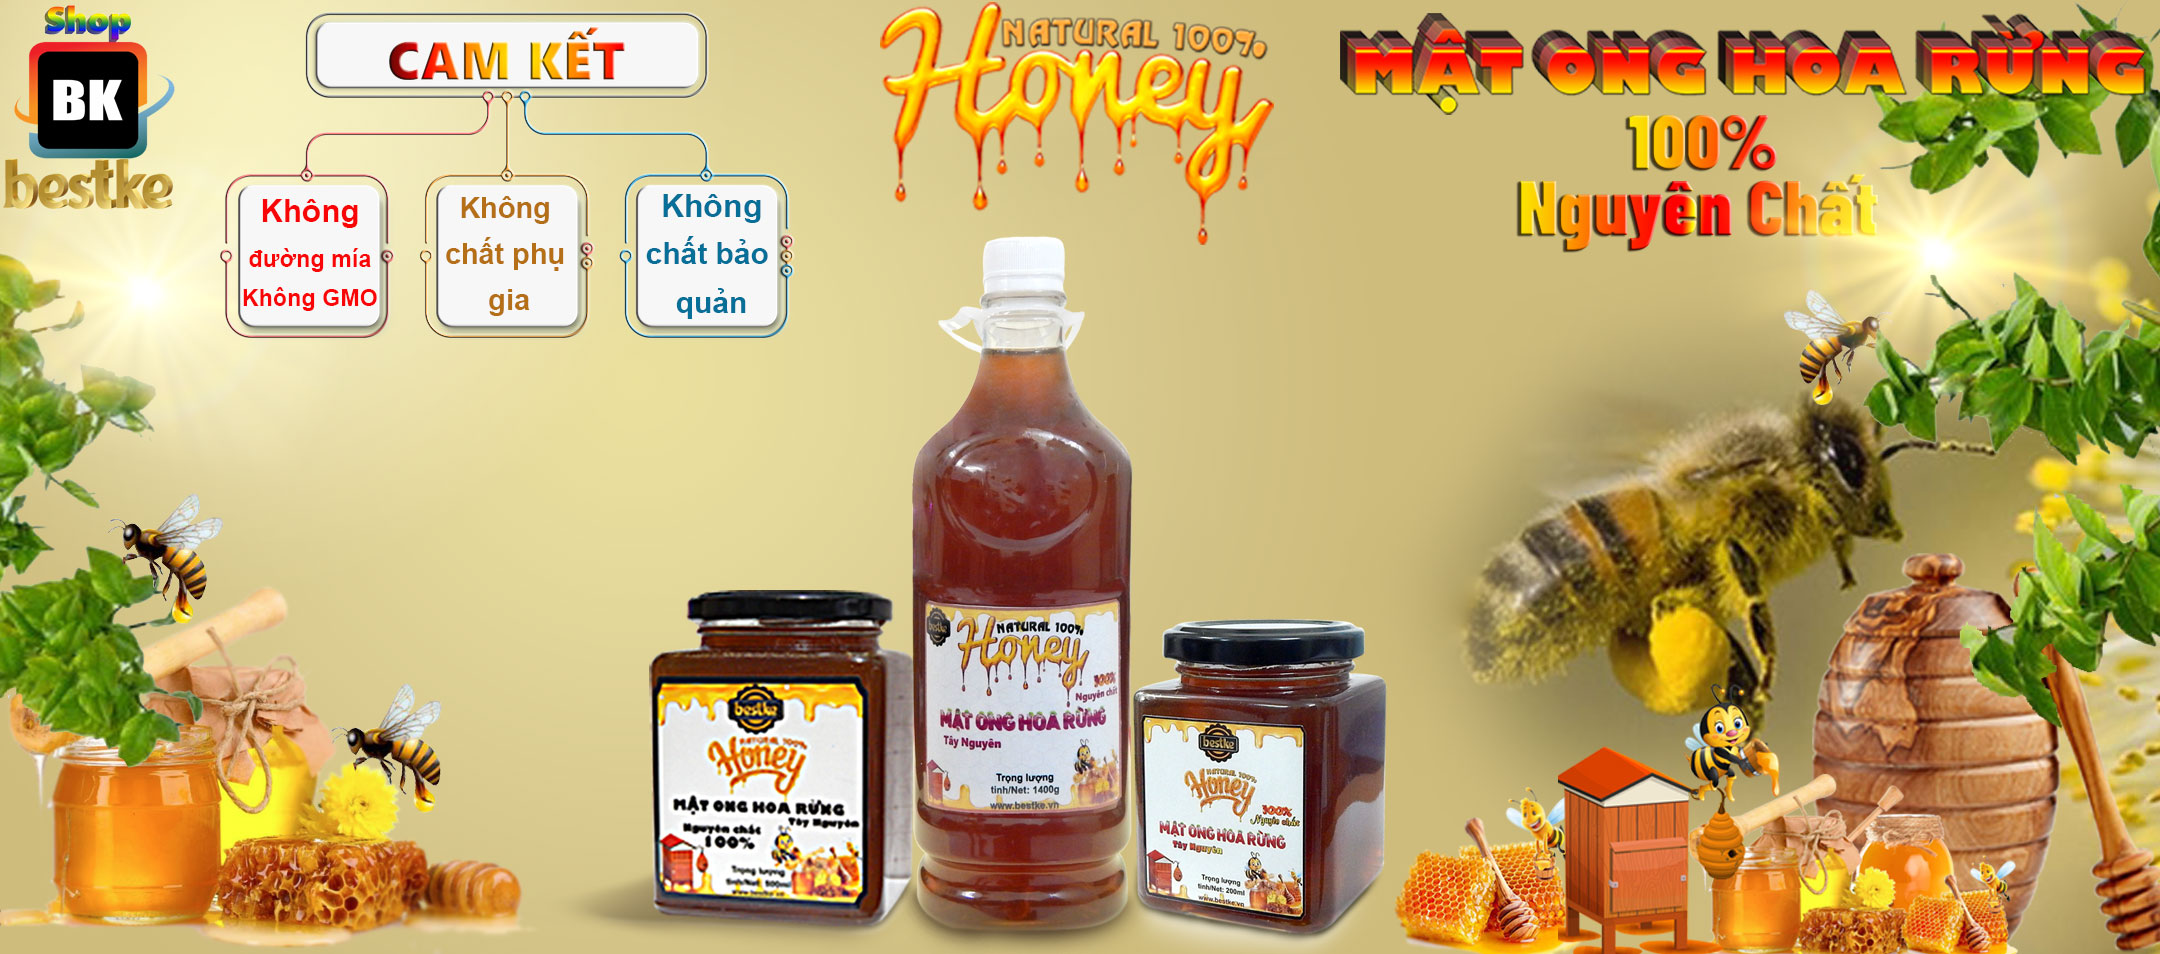 Mật ong hoa rừng Tây nguyên, nguyên chất, Hũ 200ml, 100% natural honey, Bestke